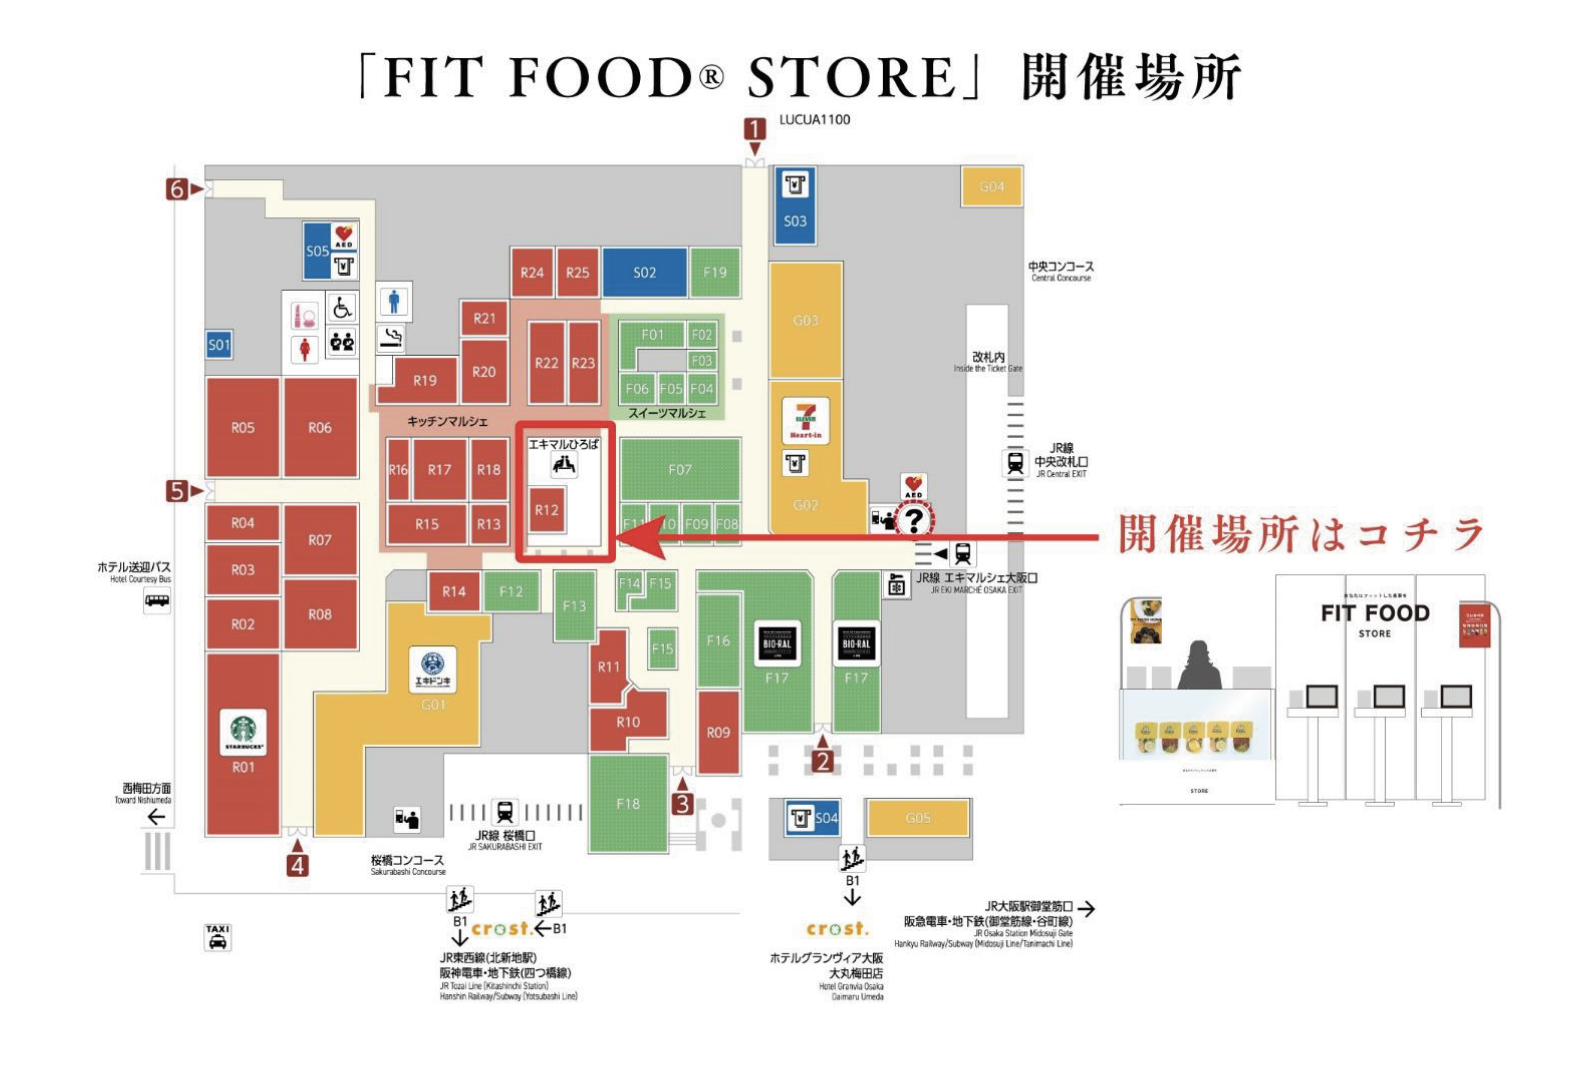 エキマルシェ大阪に期間限定で「FIT FOOD® STORE」を出店いたします